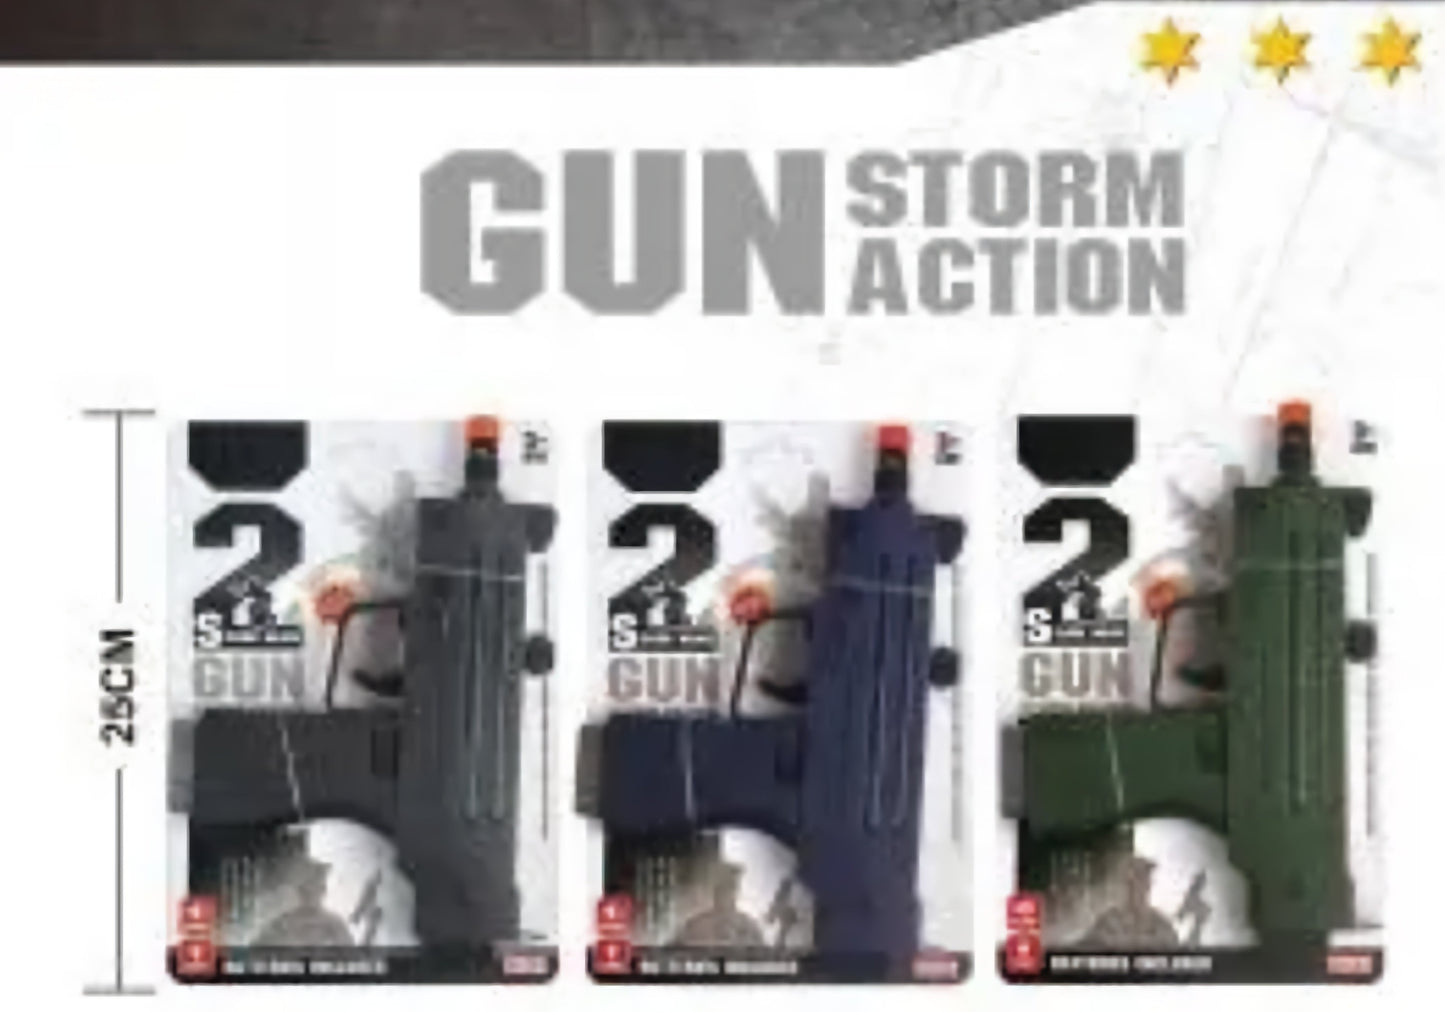 Pistola de acción Storm - Estilo Uzi de 9 mm